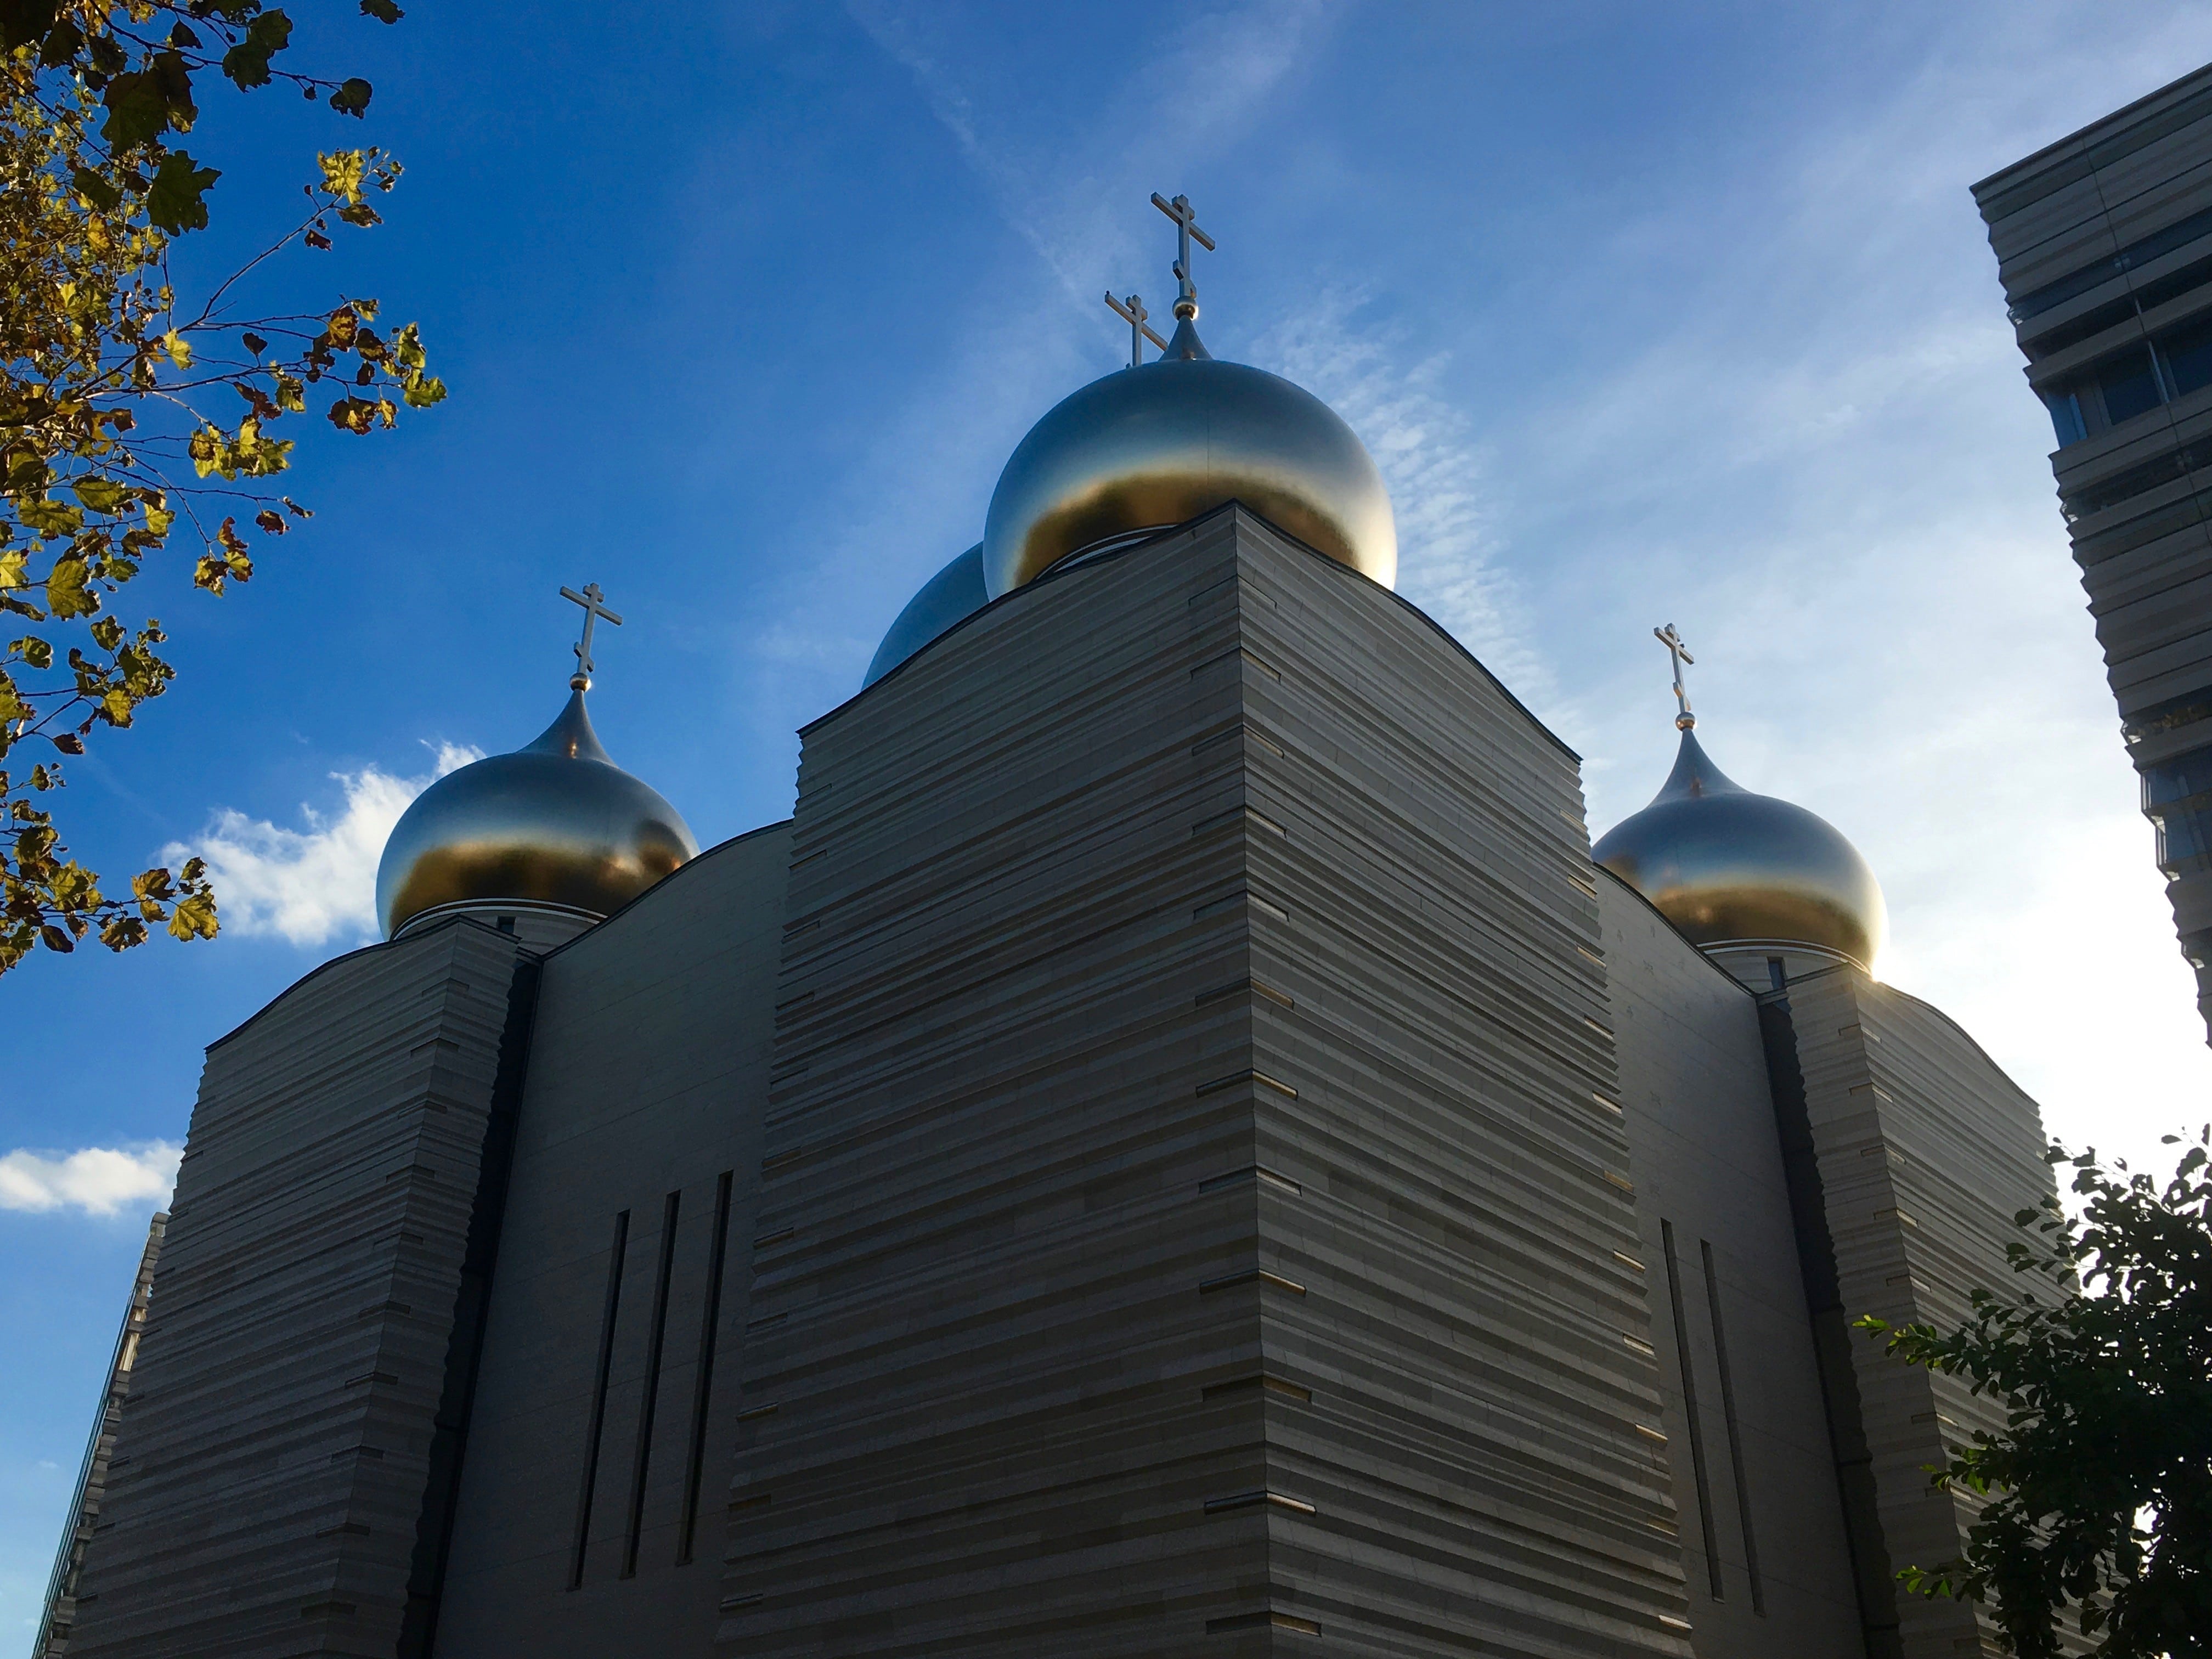 黄金の玉ねぎ屋根が目印 ロシア正教会 Chichi Paris パリに住むエステティシャンのblog Paris Madame Figaro Jp フィガロジャポン